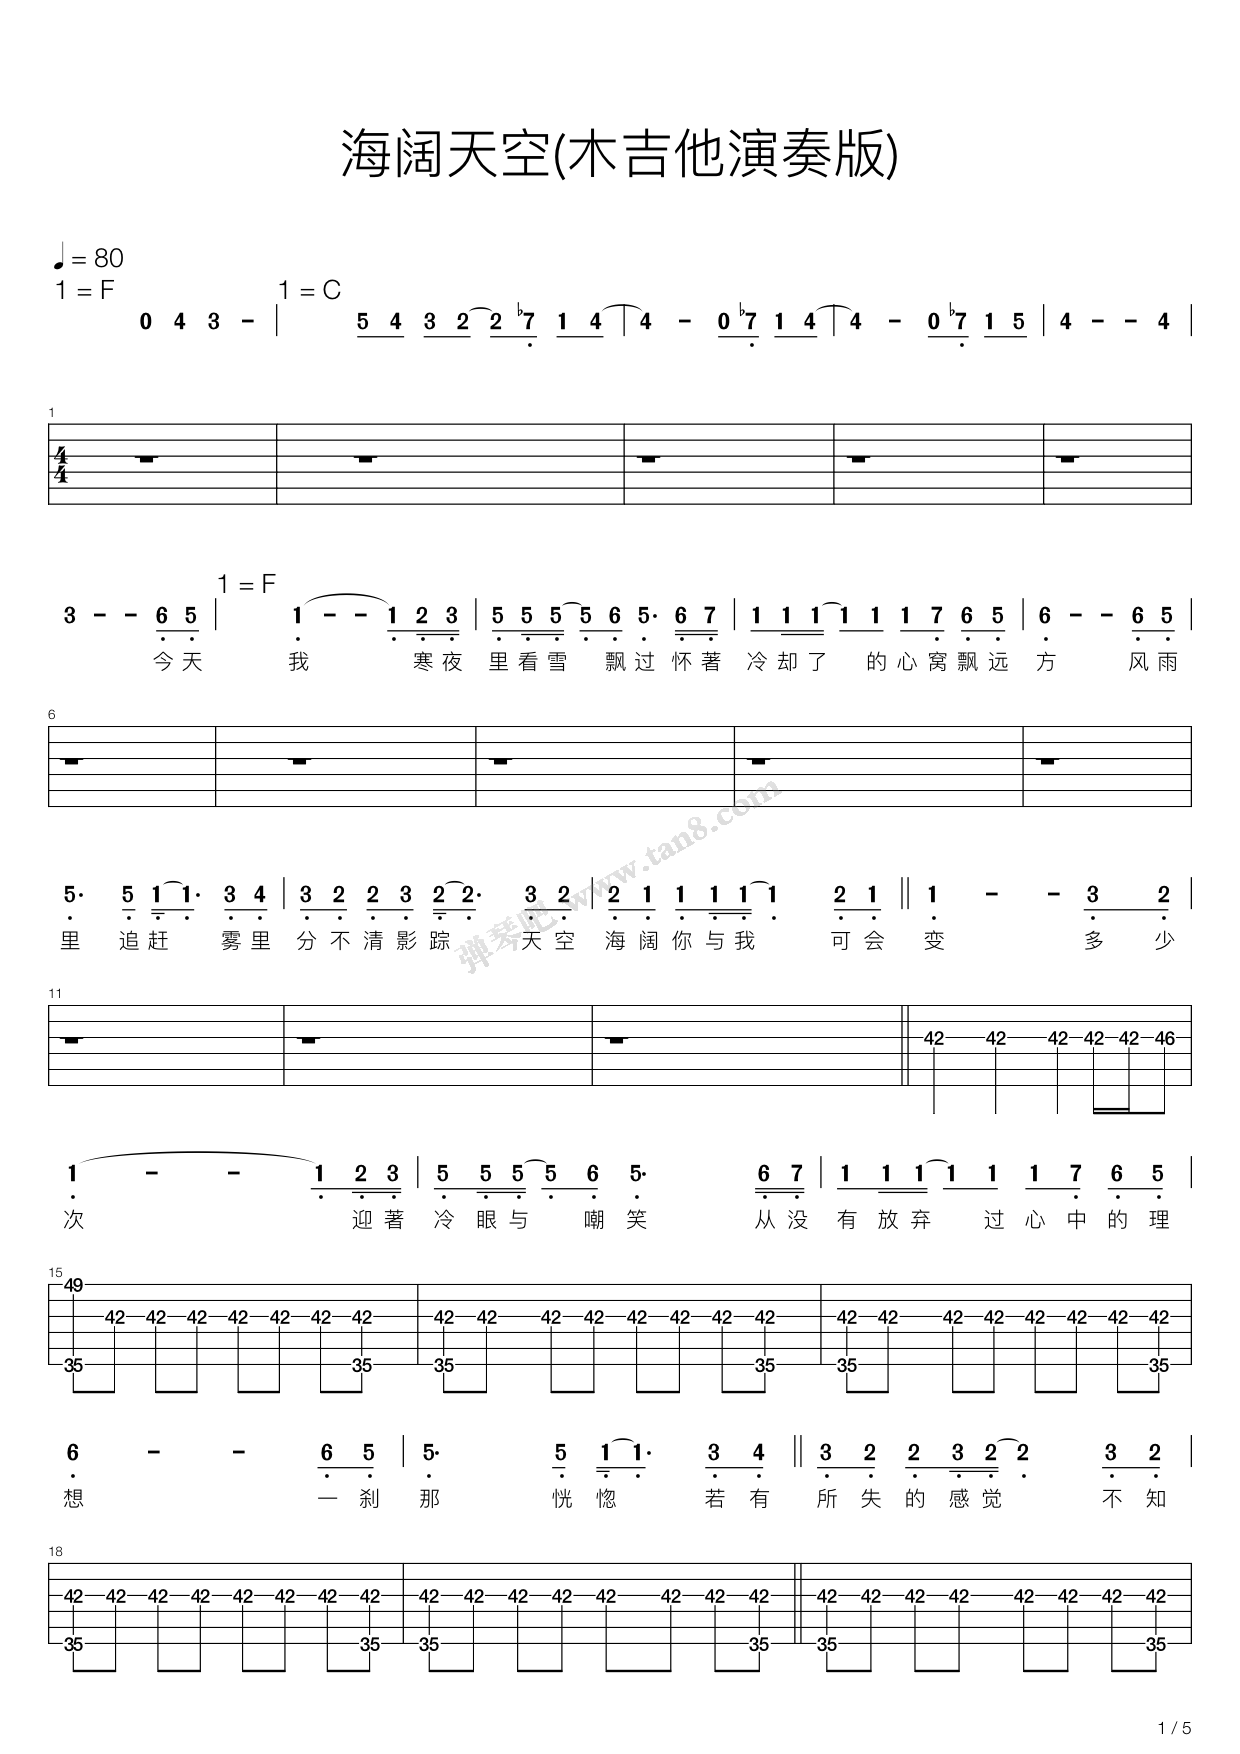 海阔天空 吉他 扫描版 Beyond 吉他谱 和弦谱,简谱,五线谱